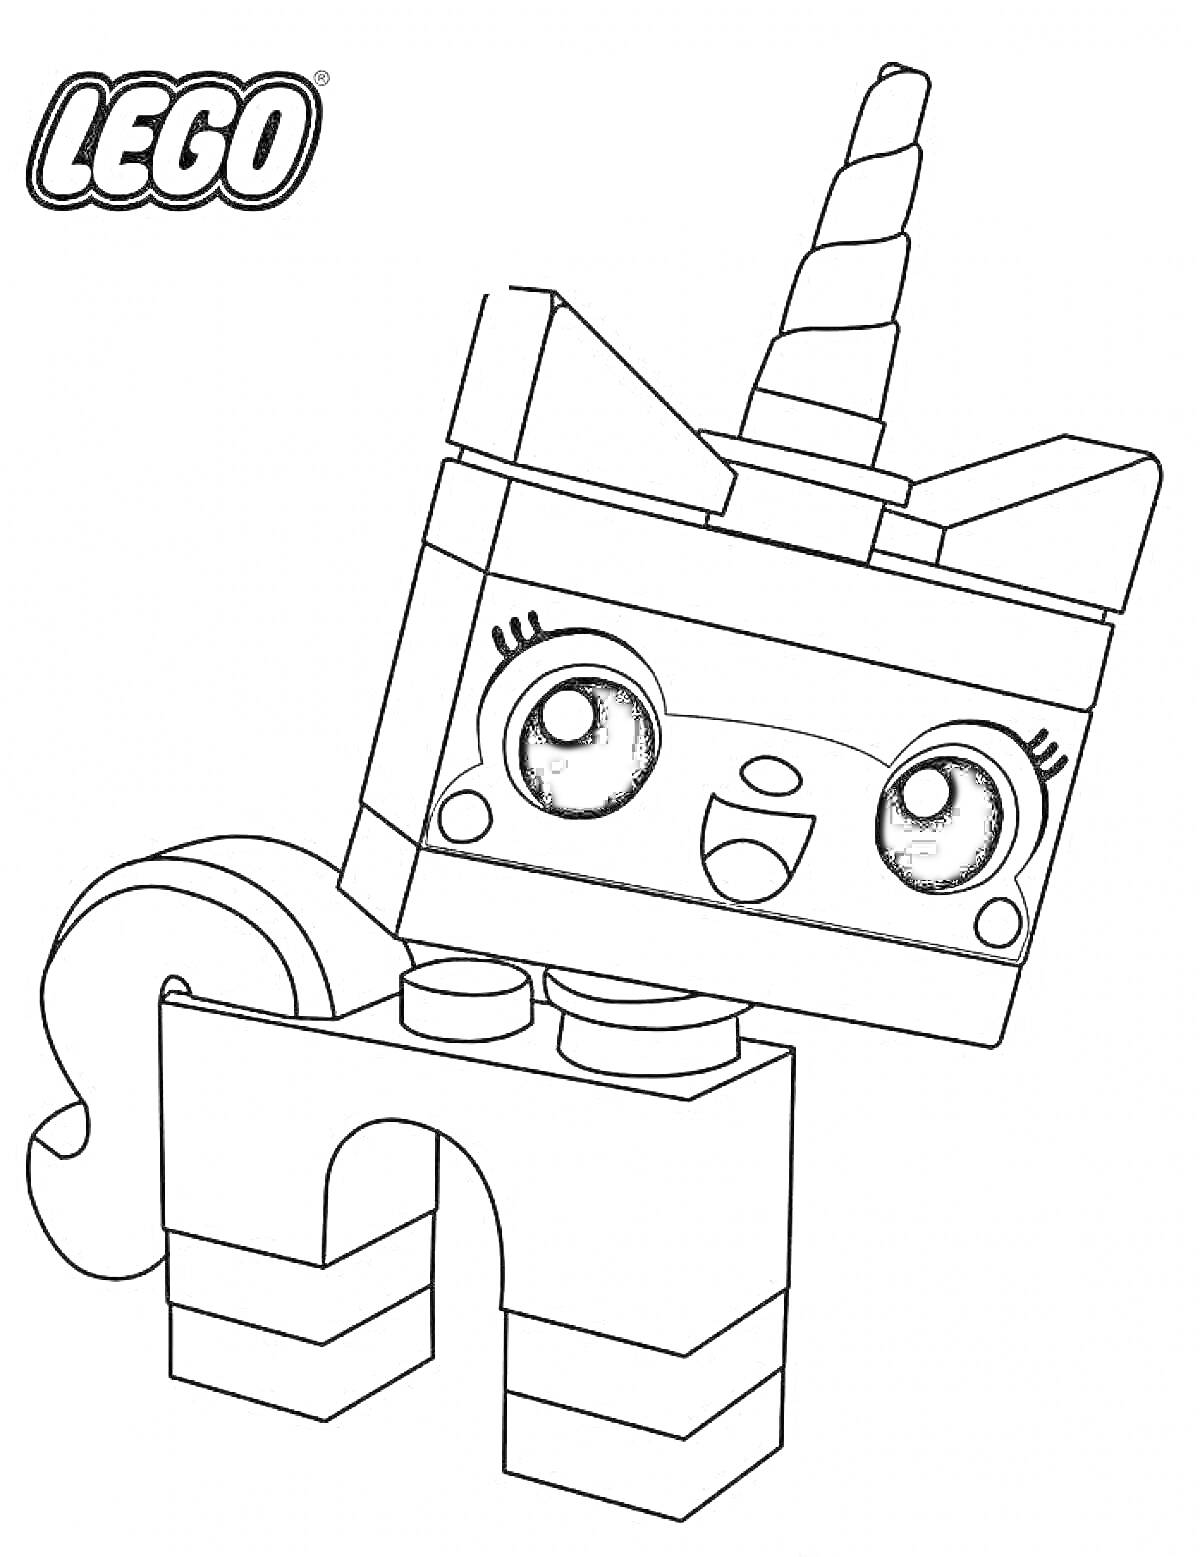 Раскраска Лего Единорог с радостным выражением лица, закрученный рог и большой глазки.